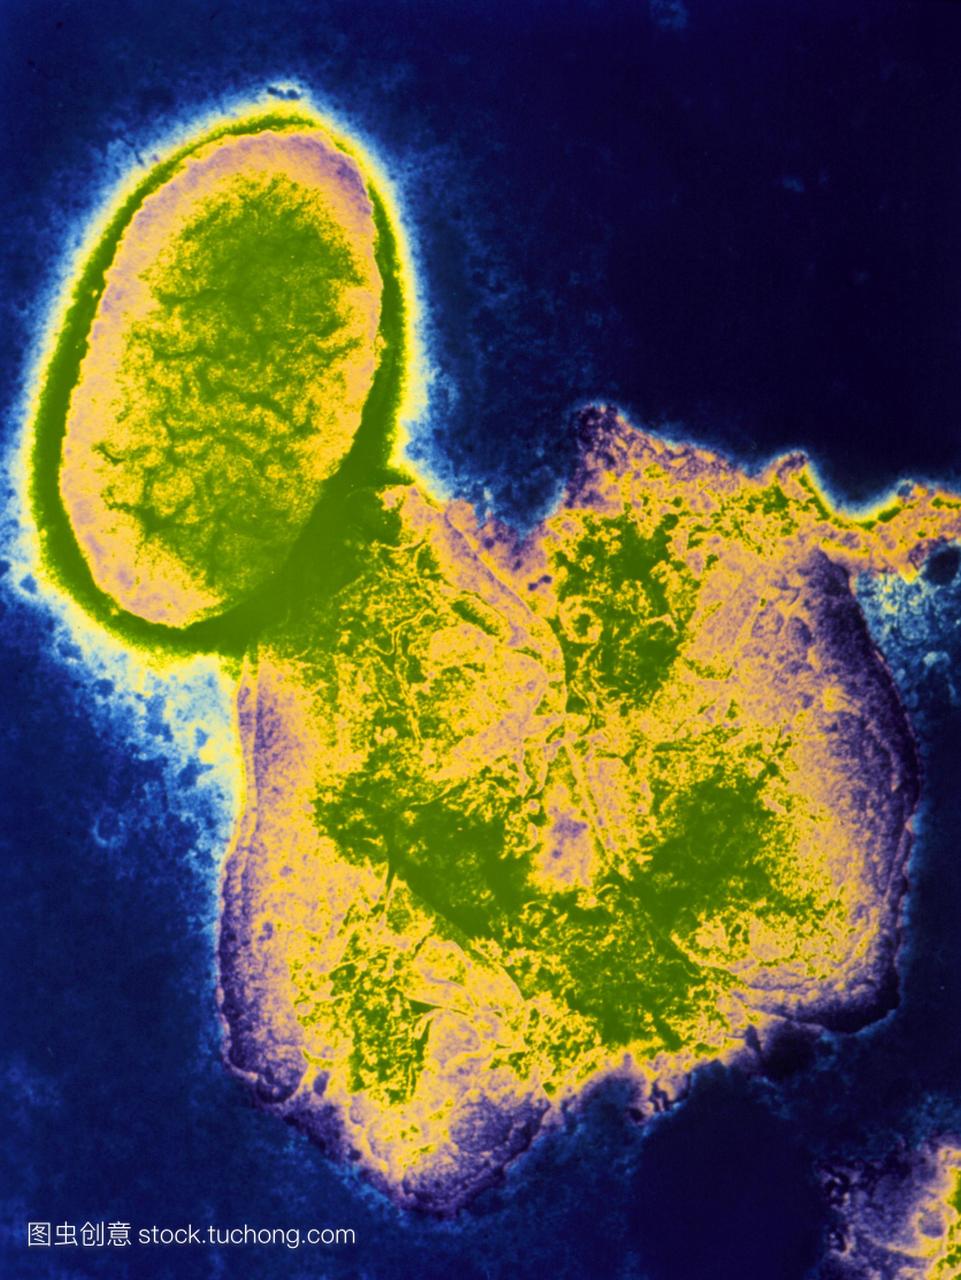 伪彩色透射电子显微照片的细菌流感嗜血杆菌椭